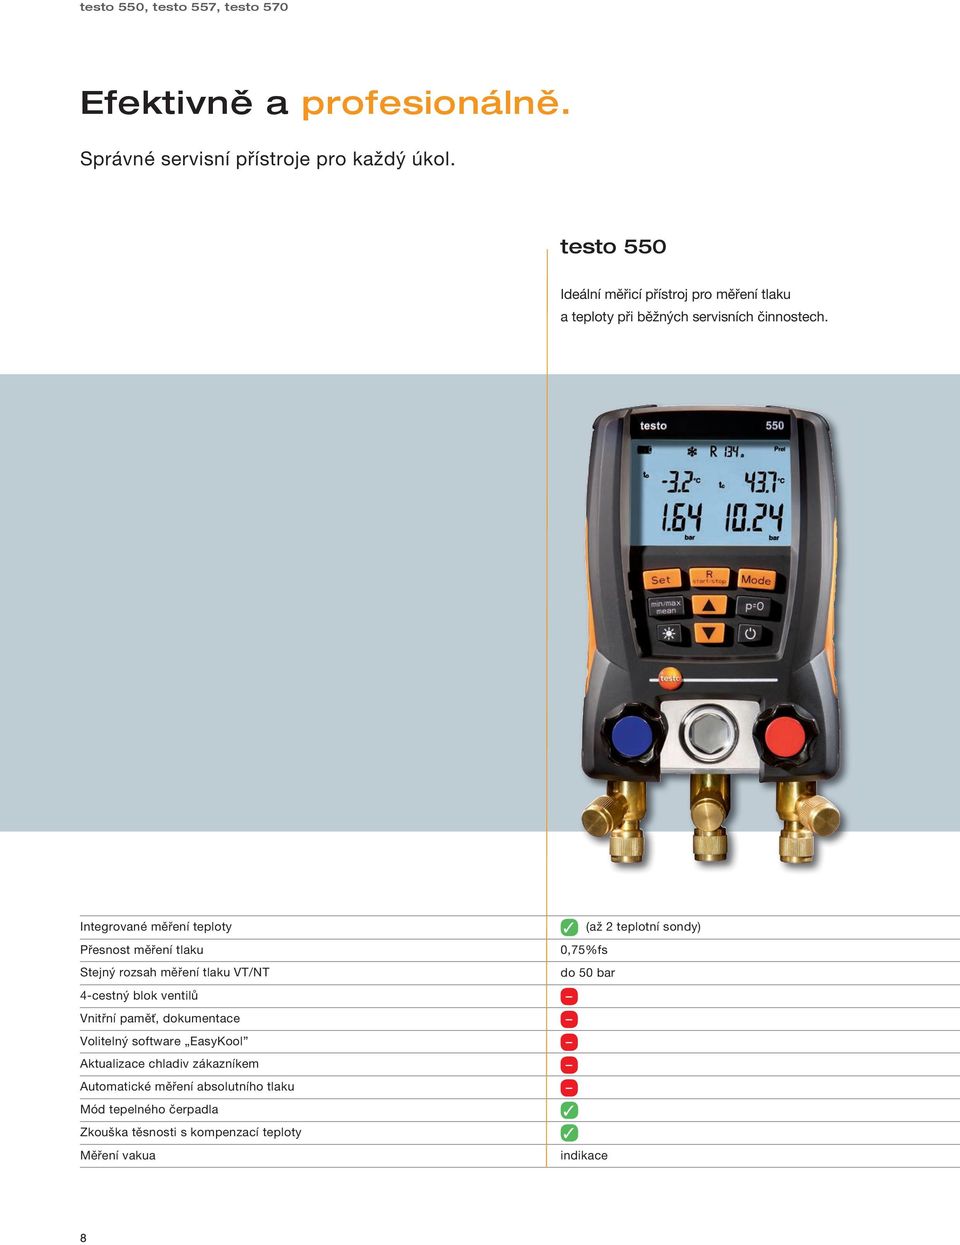 Integrované měření teploty Přesnost měření tlaku Stejný rozsah měření tlaku VT/NT 4-cestný blok ventilů Vnitřní paměť, dokumentace